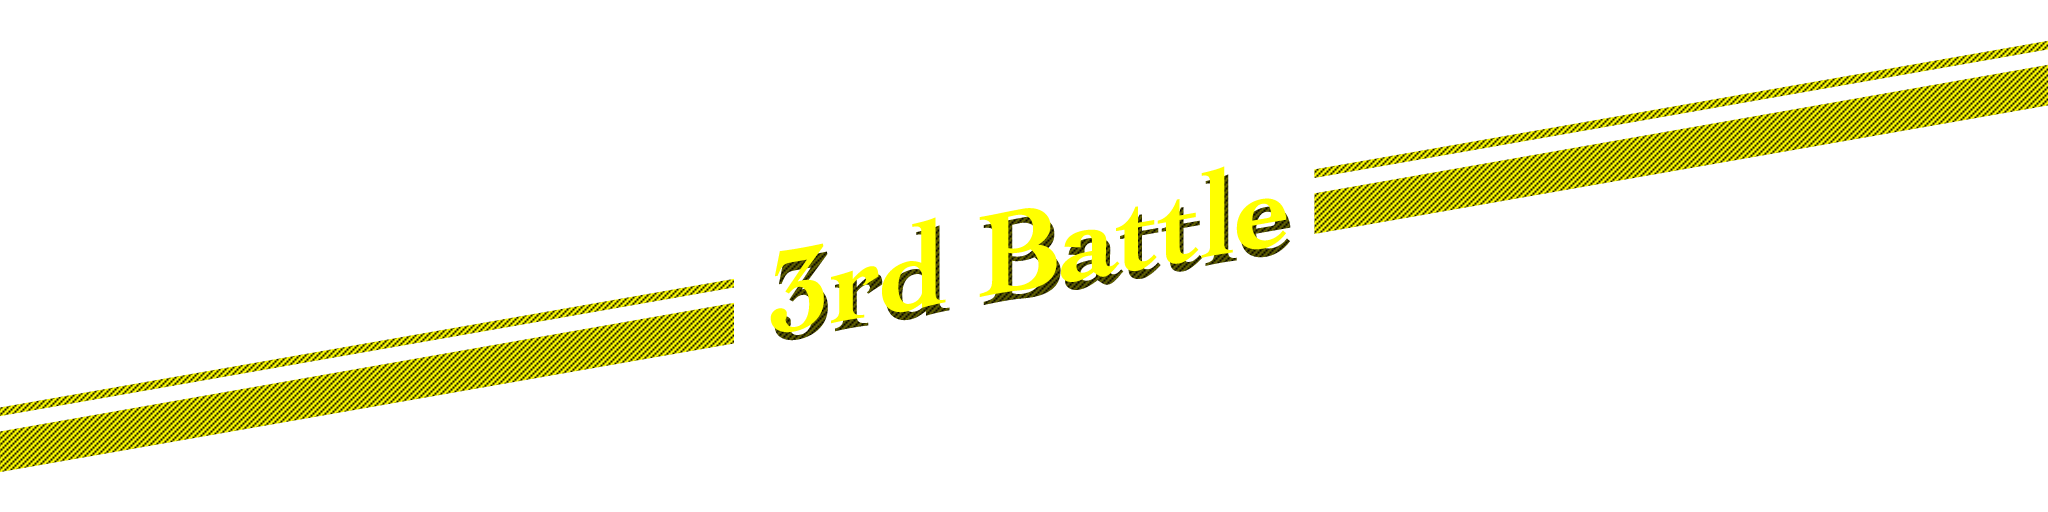 3rd Battle